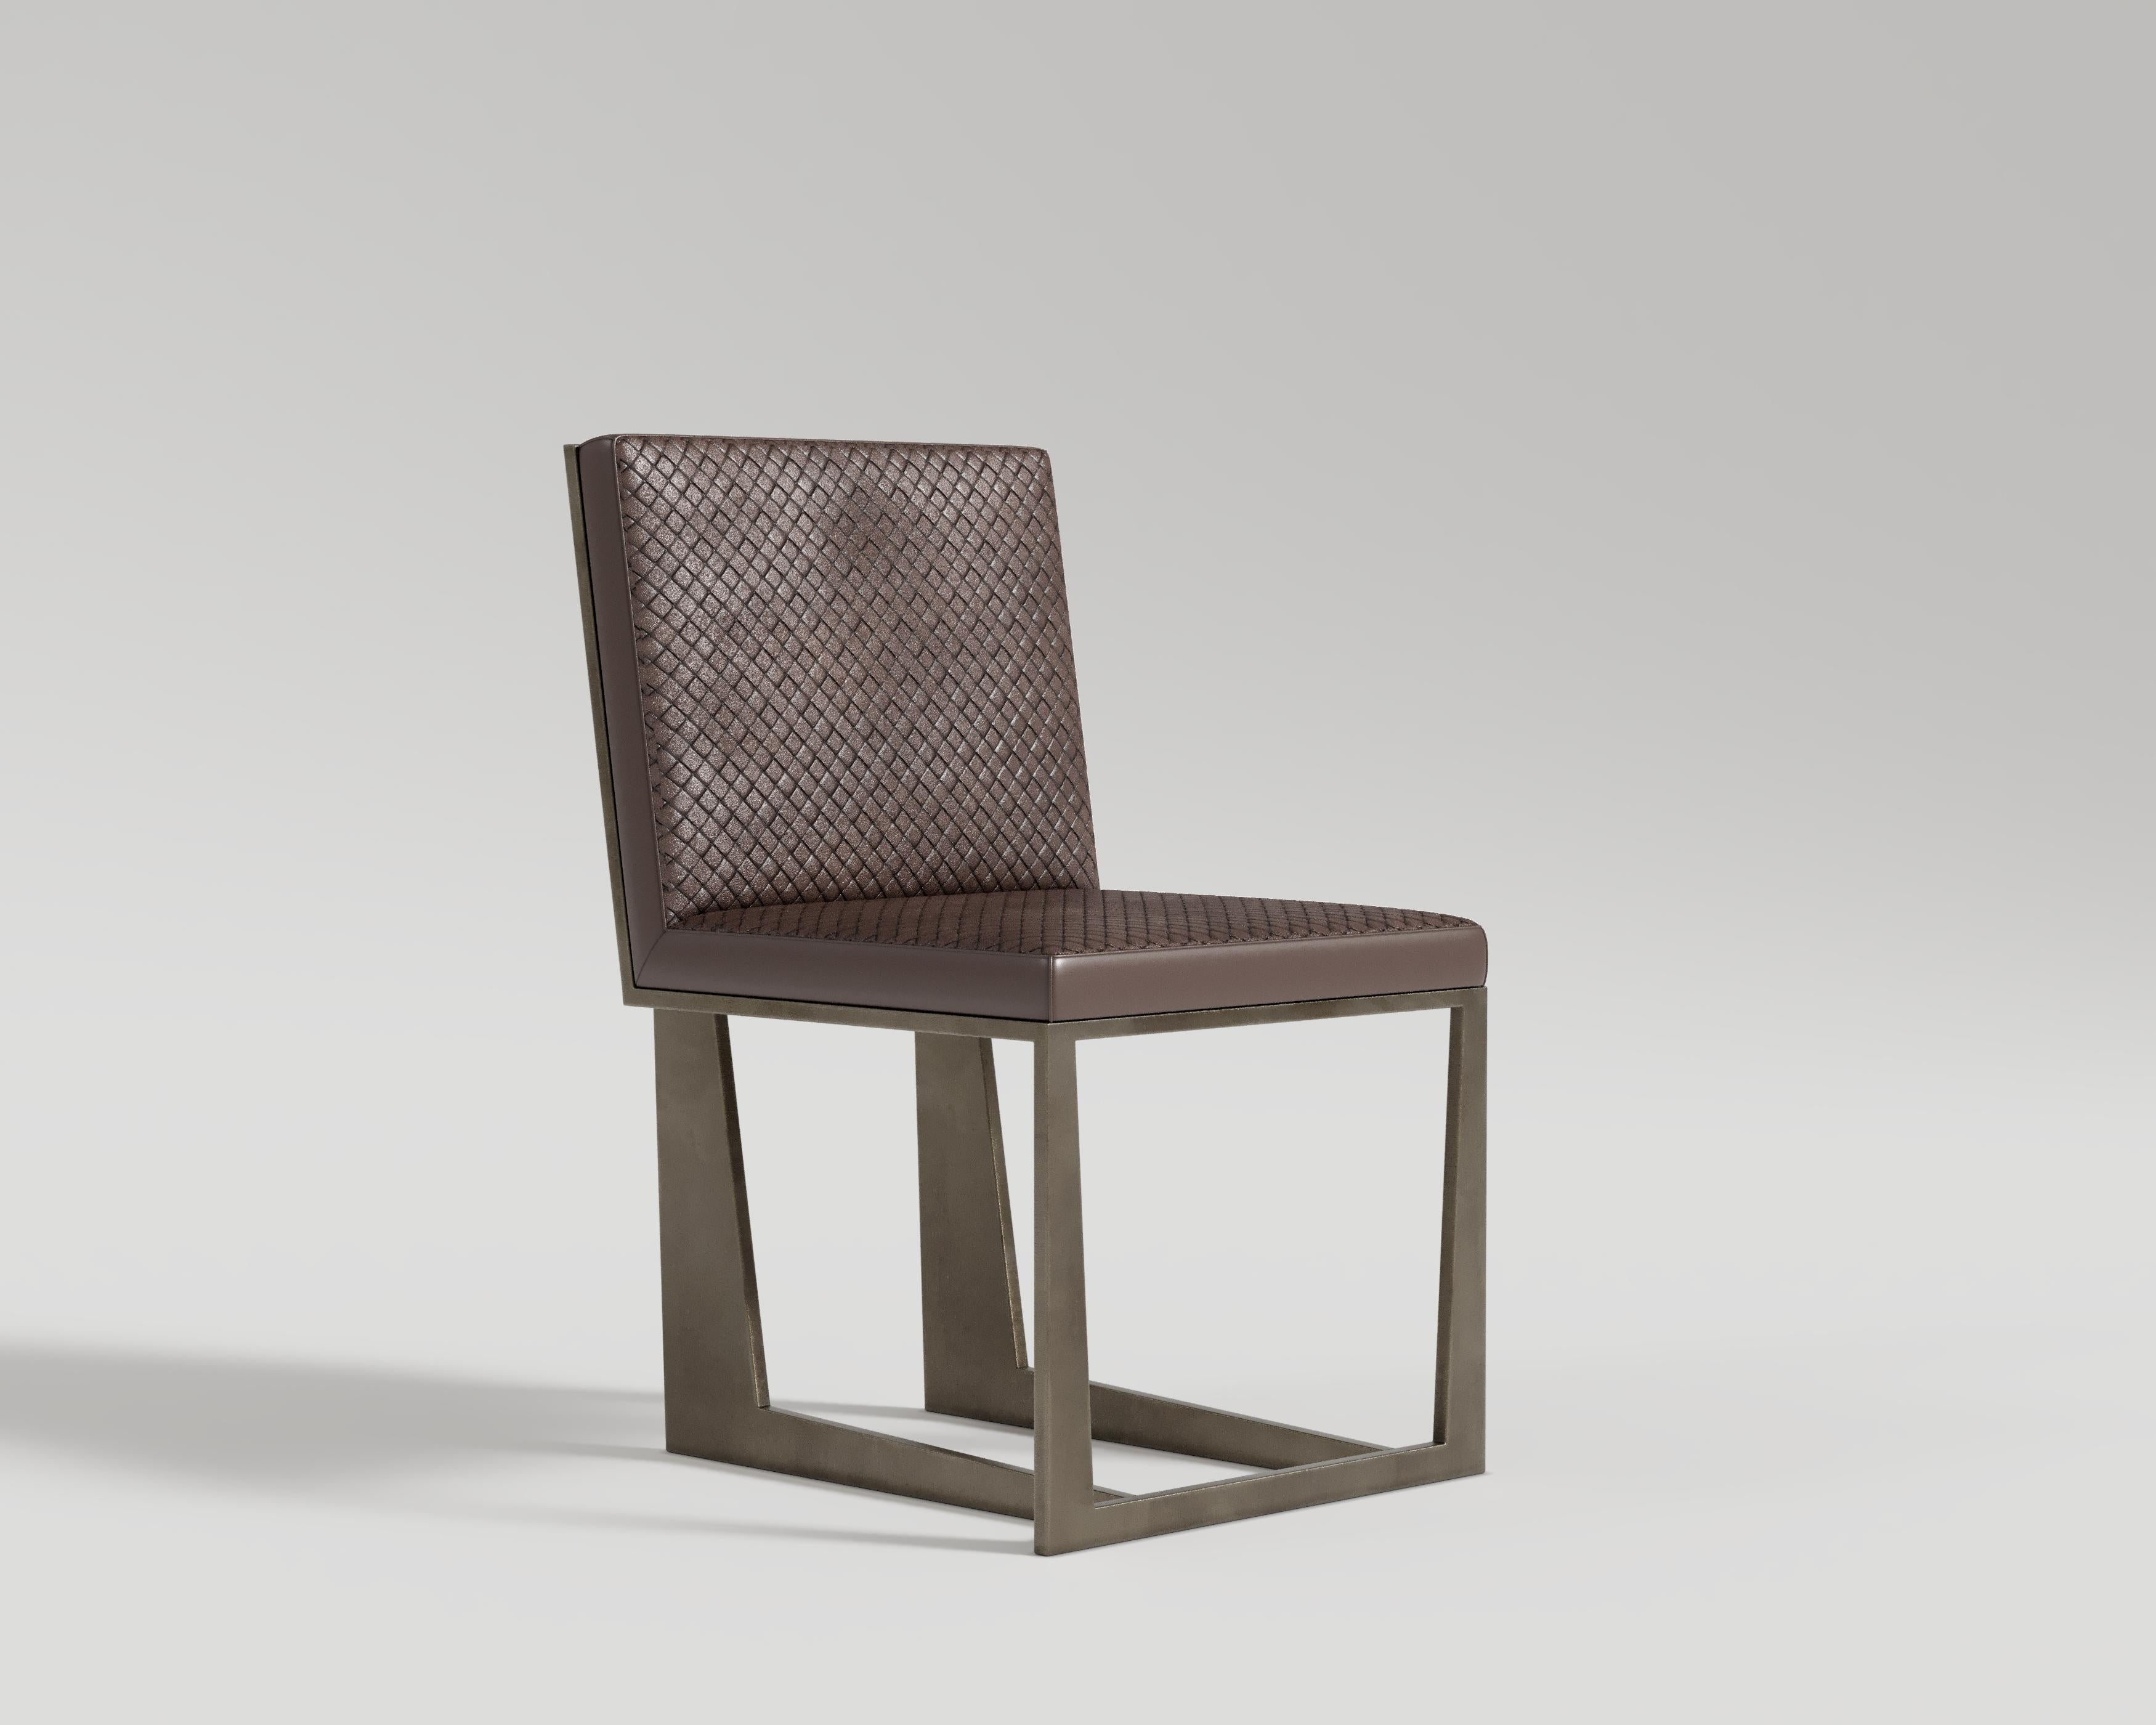 Chaise Affilato
La chaise de salle à manger Affilato présente un design méticuleusement élaboré qui associe une structure métallique robuste à une assise en cuir luxueux. Fabriquée à la main avec précision et souci du détail, la chaise présente une